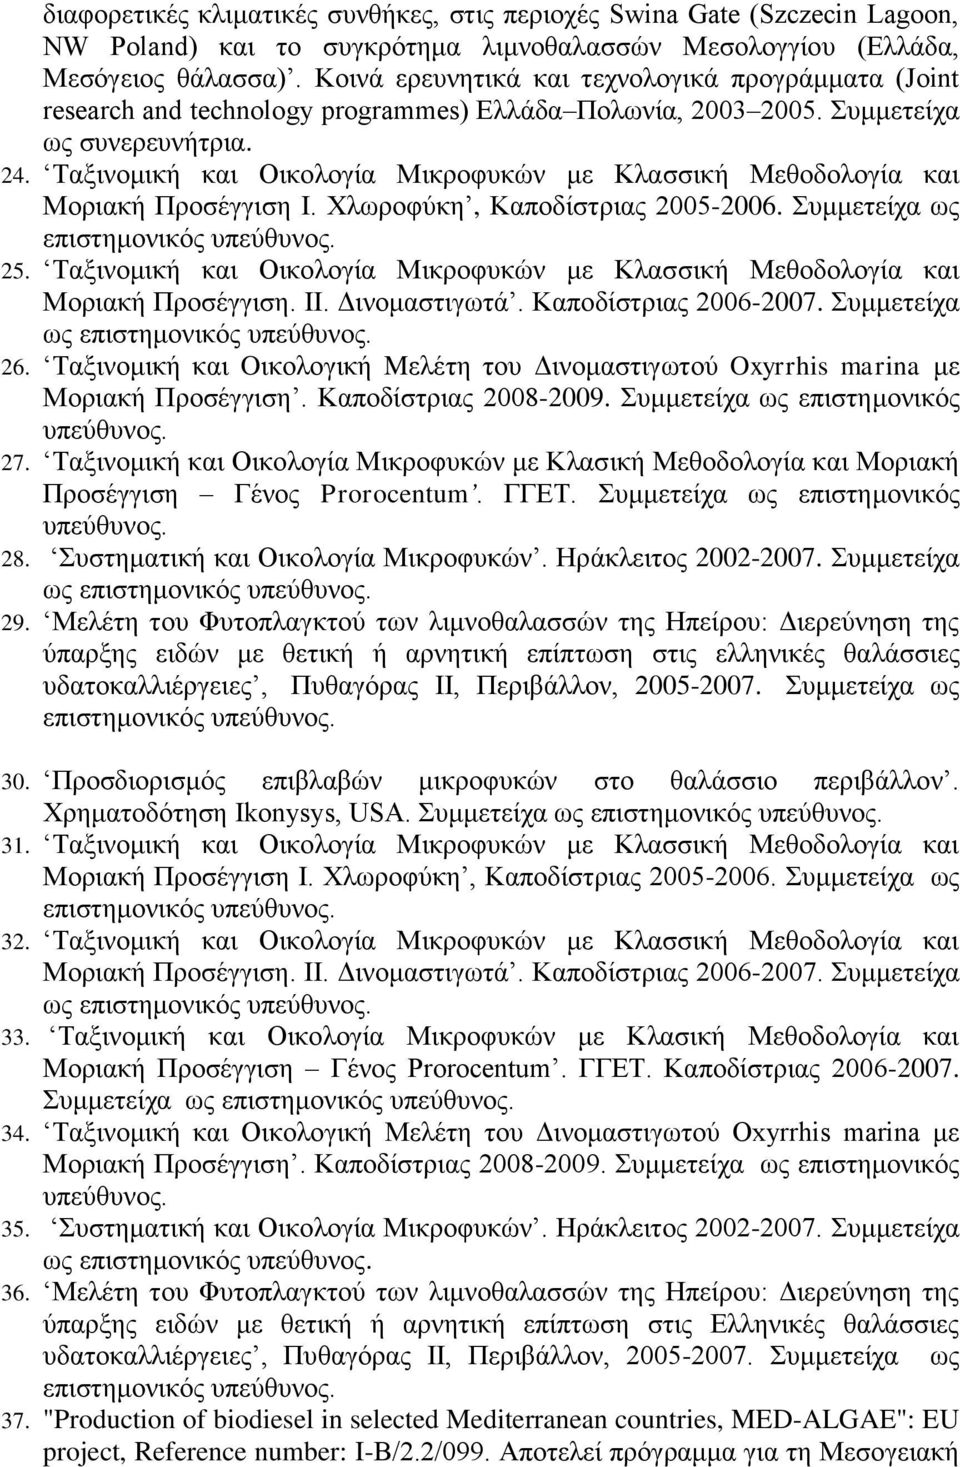 Ταξινομική και Οικολογία Μικροφυκών με Κλασσική Μεθοδολογία και Μοριακή Προσέγγιση I. Χλωροφύκη, Καποδίστριας 2005-2006. Συμμετείχα ως επιστημονικός υπεύθυνος. 25.